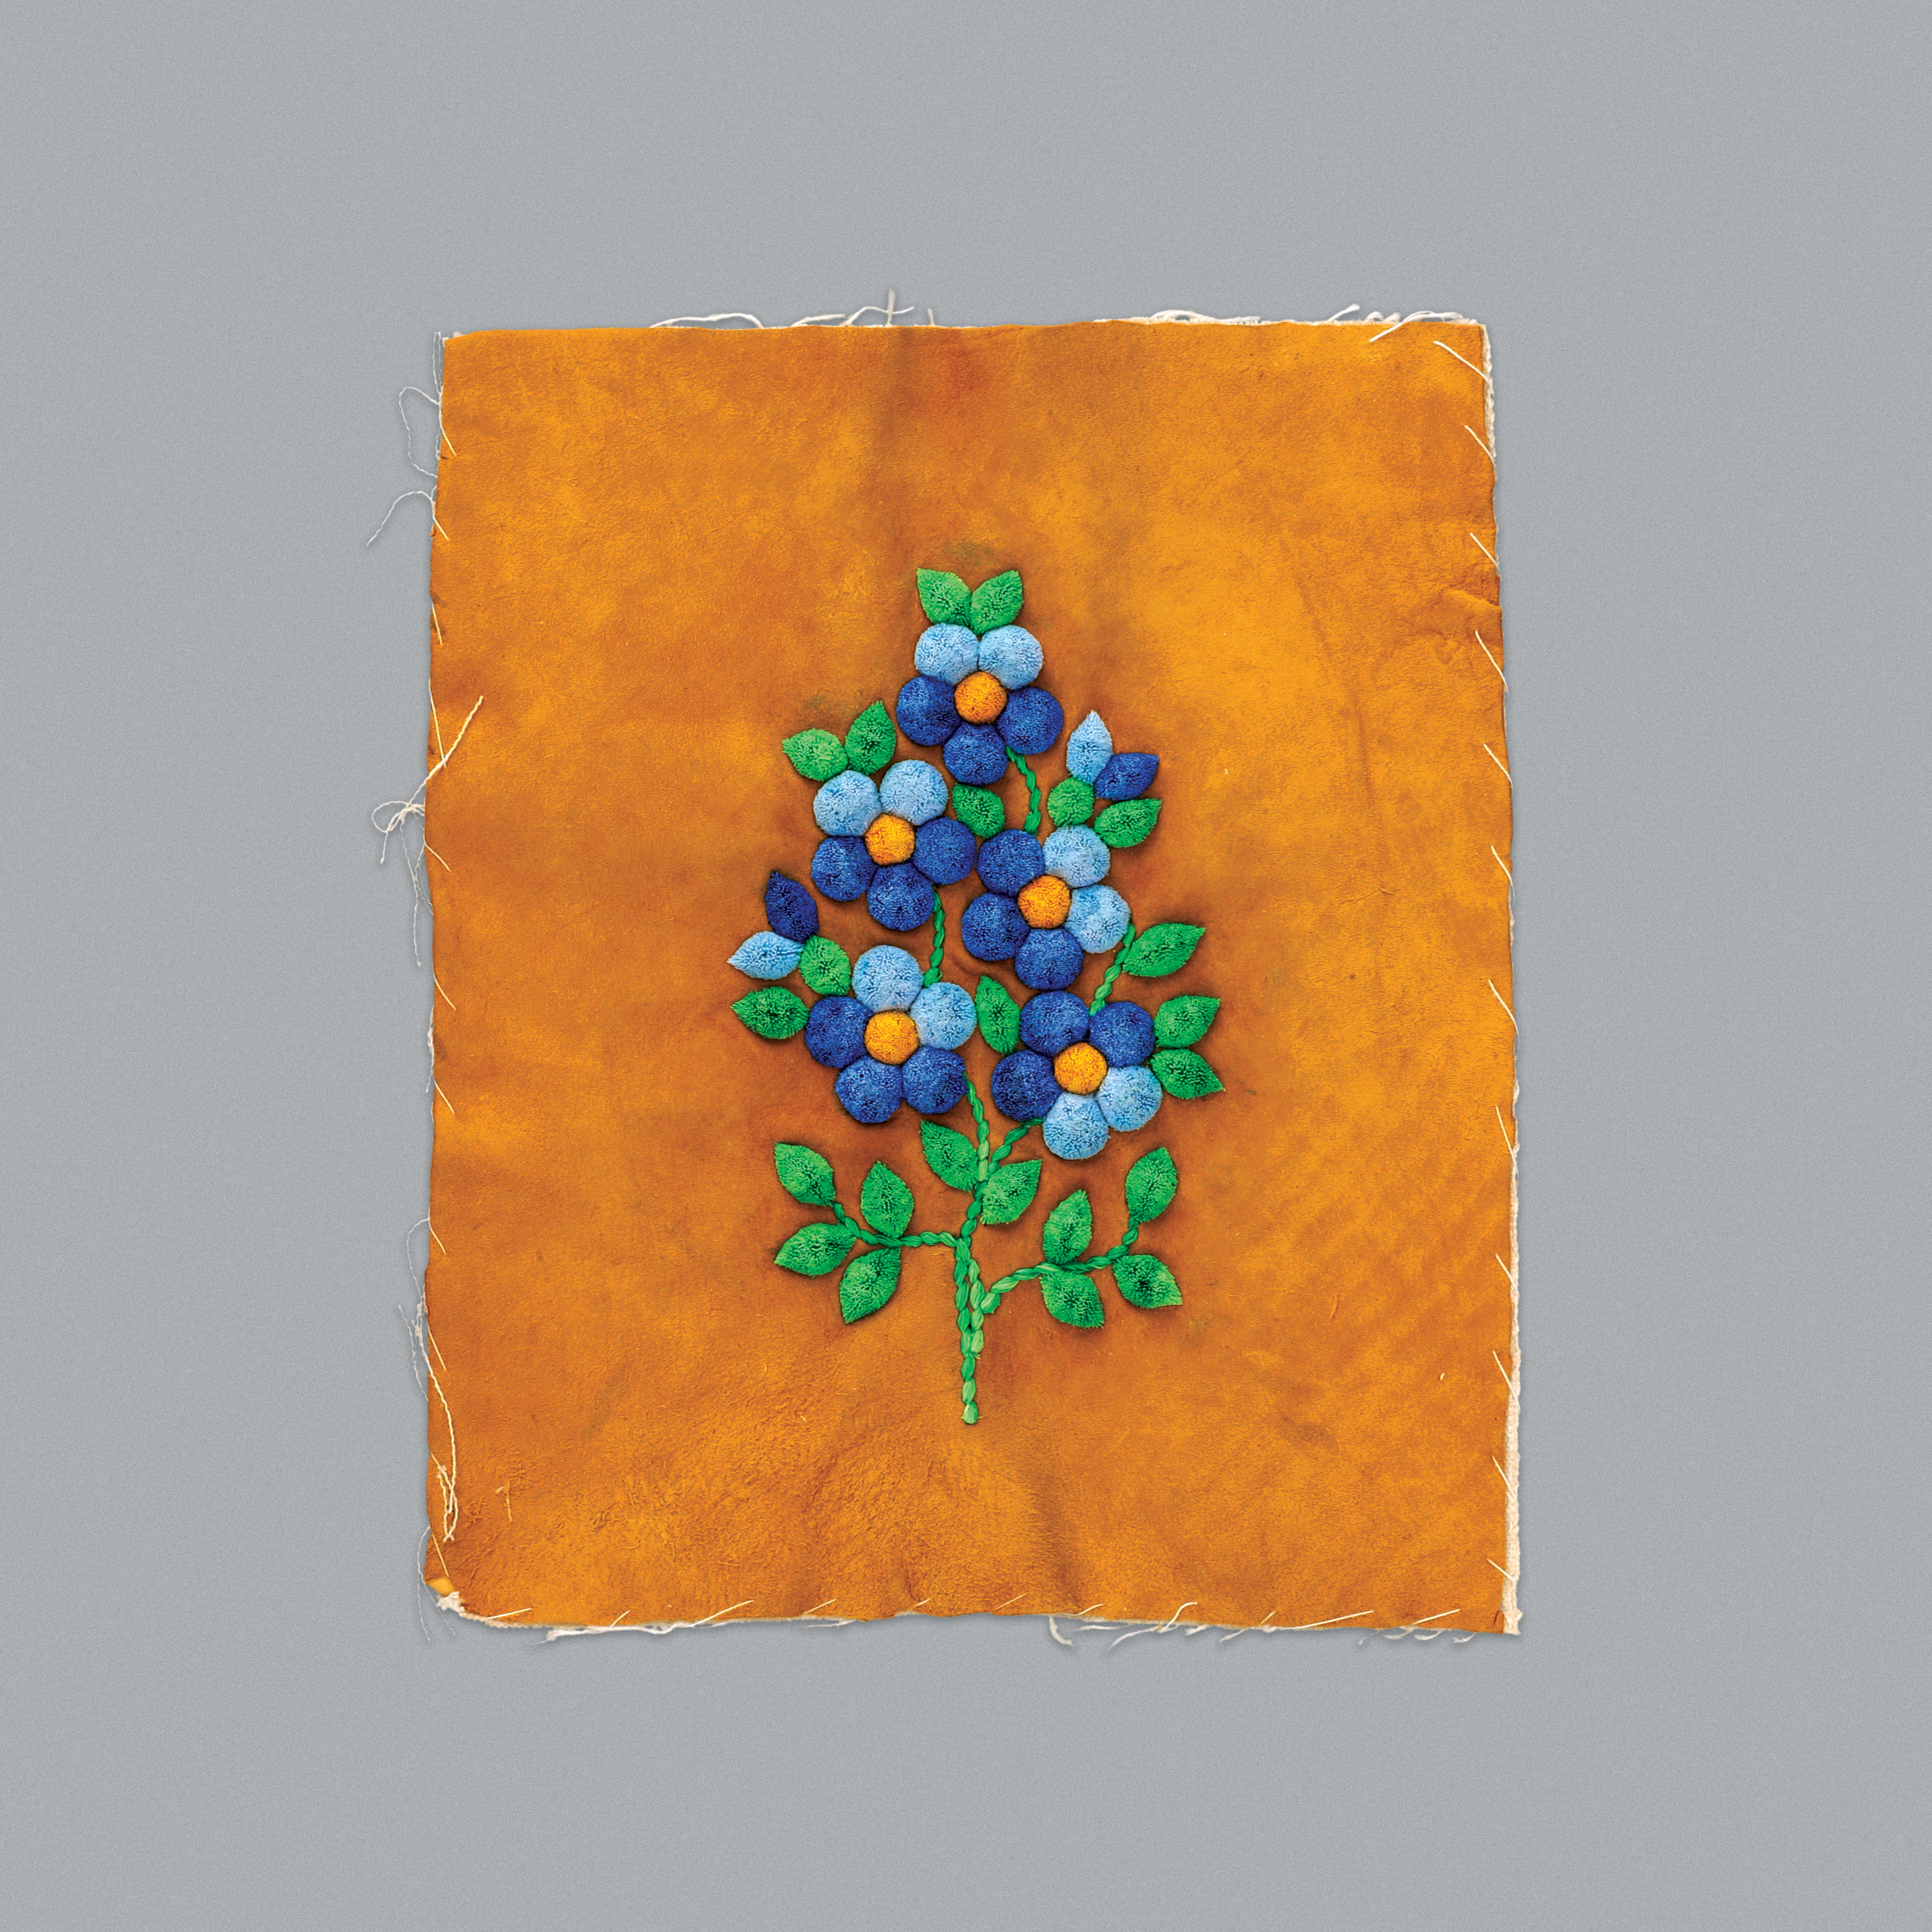 Motifs floraux faits de touffes de poils d’orignal sur une pièce de cuir.